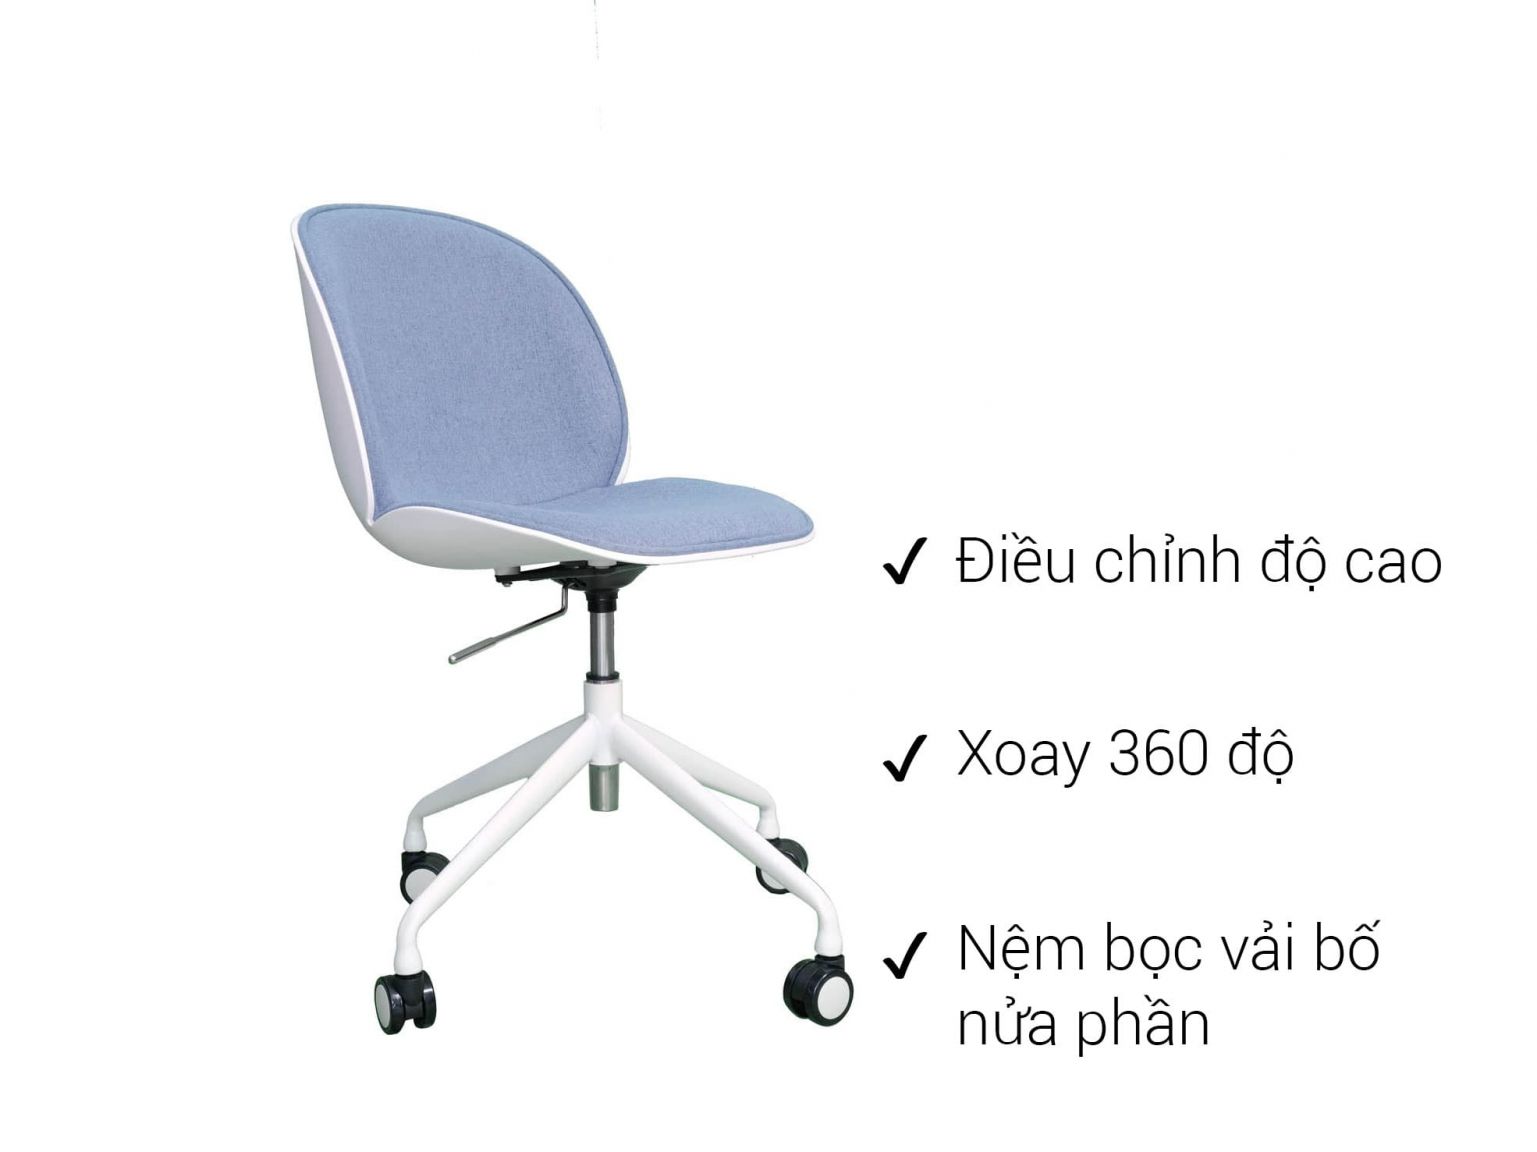 Ghế nhựa cho văn phòng chân xoay có cấu tạo đặc biệt hơn các dòng ghế nhựa thông thường